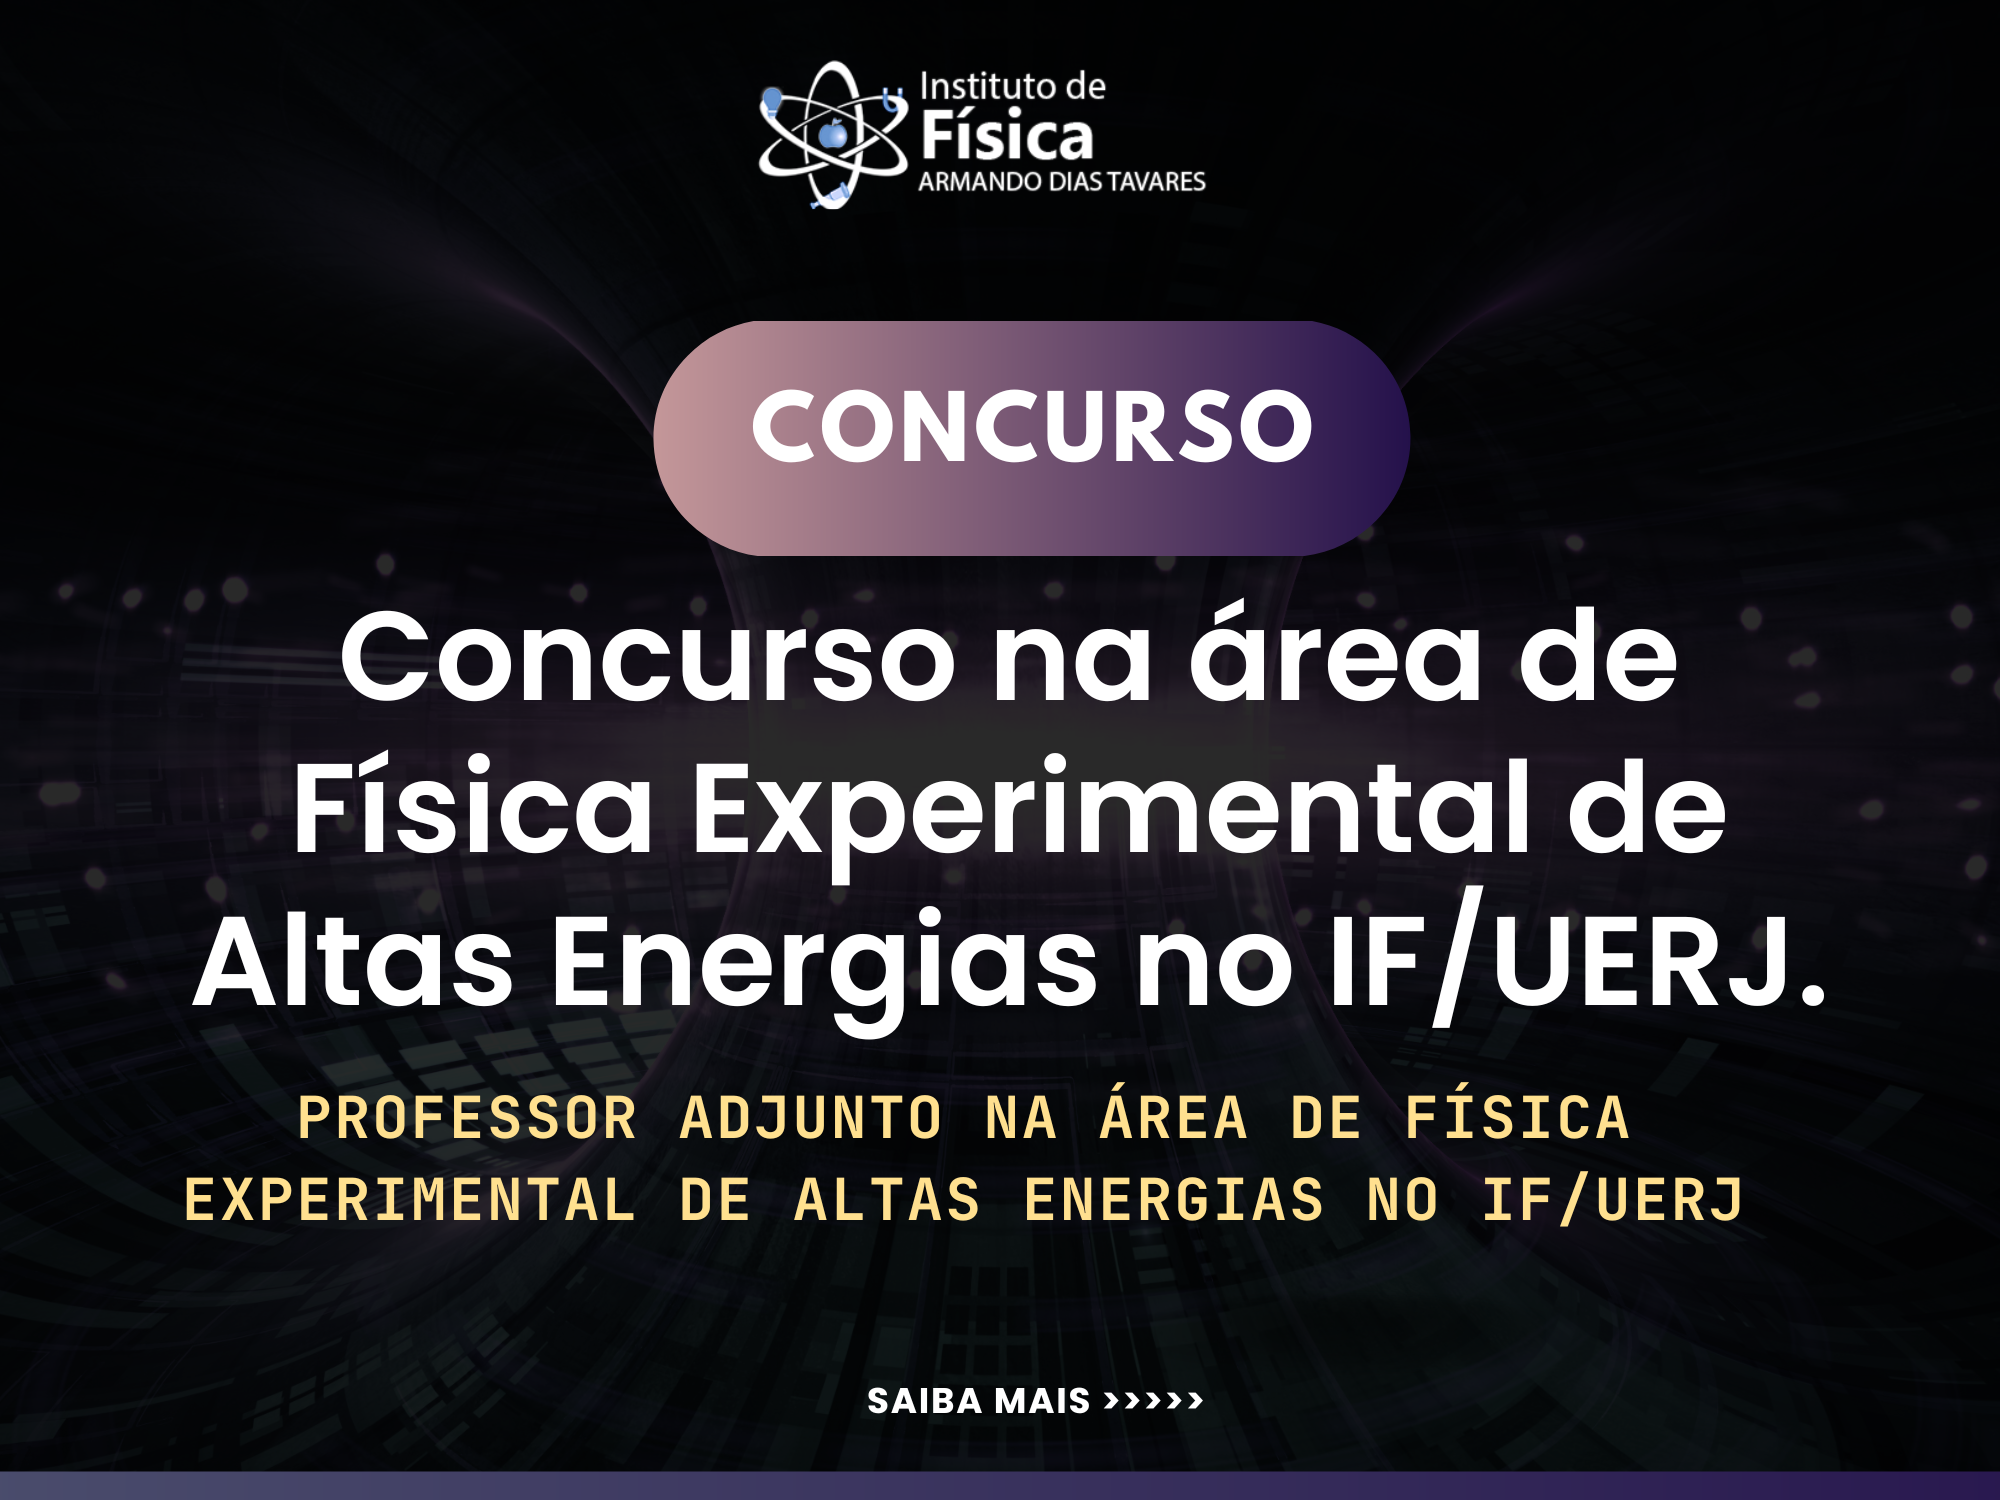 Concurso na área de Física Experimental de Altas Energias no IF/UERJ.